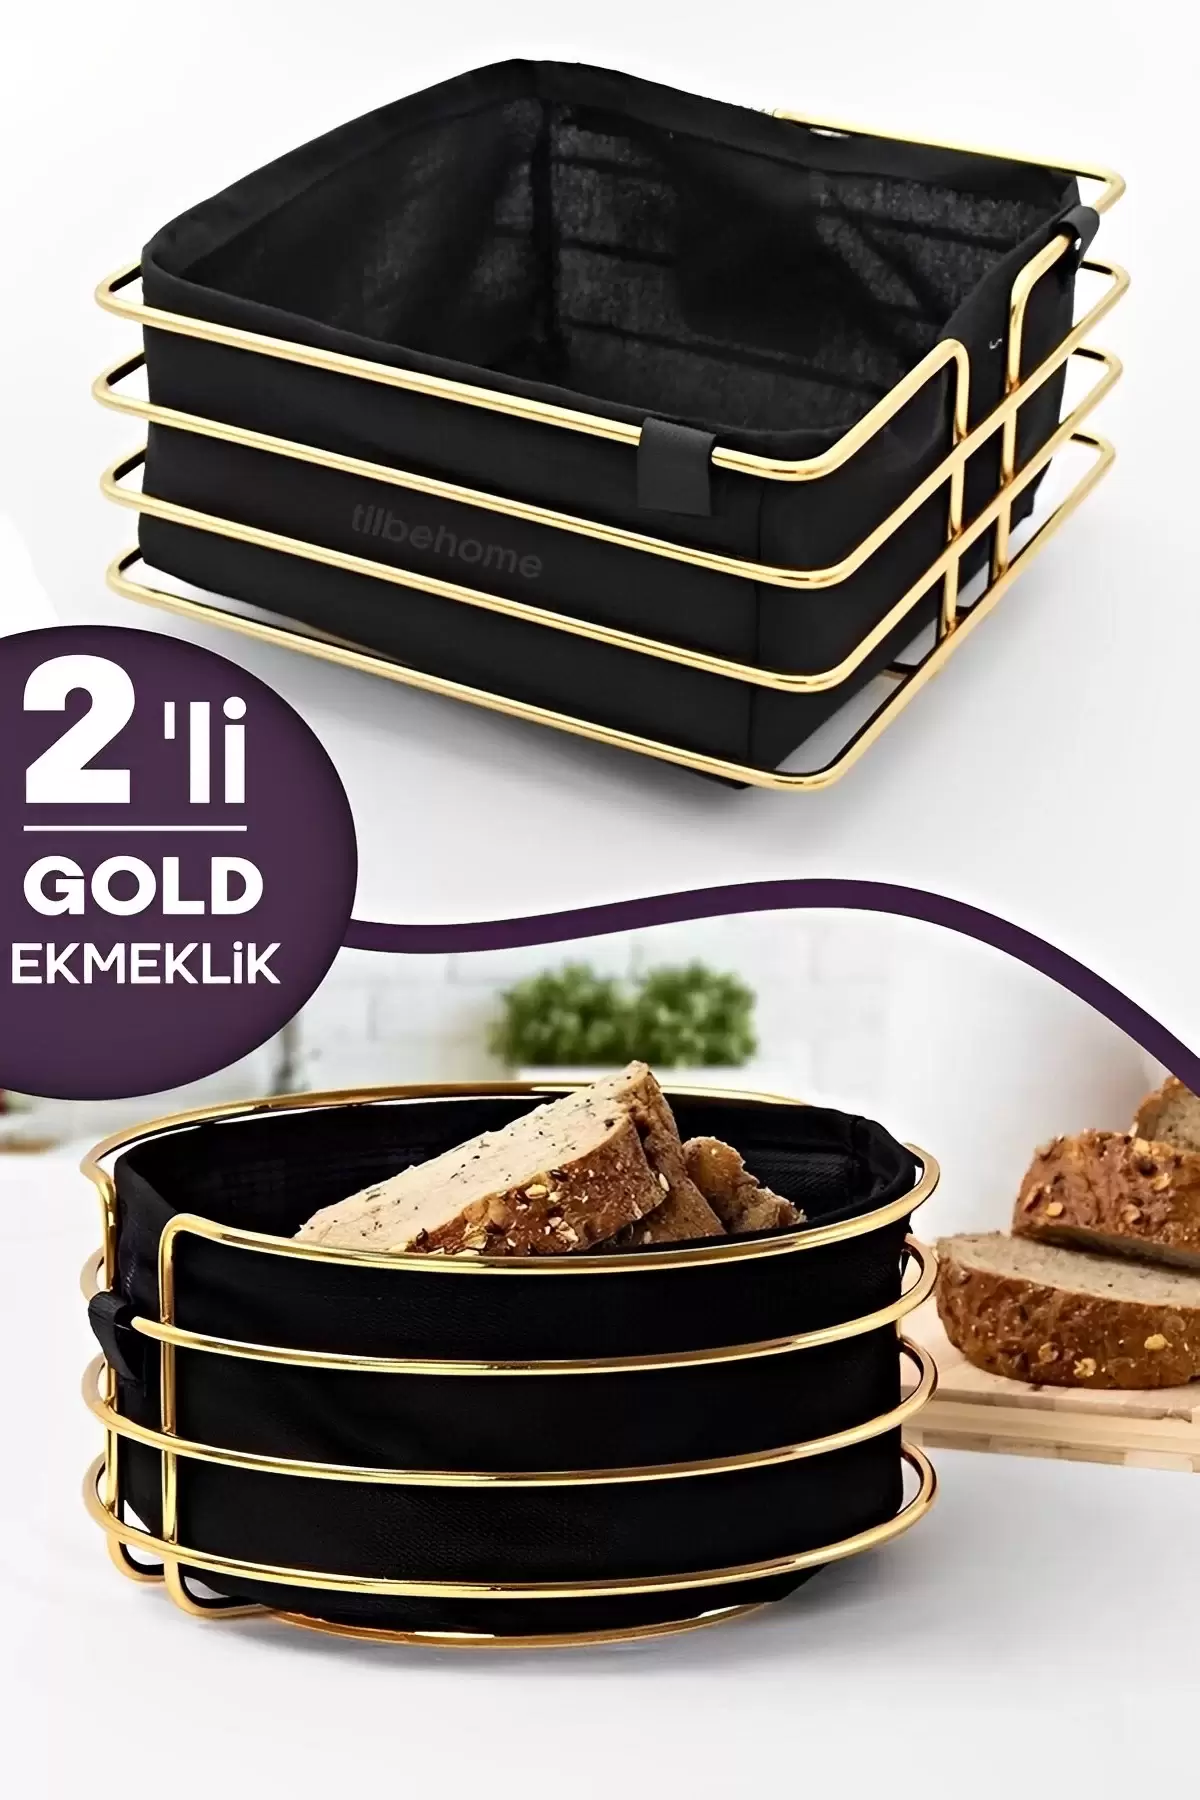 2li Lüx Gold Ekmeklik Paslanmaz Krom Sofra Ekmek Sepeti Ergonomik Şeritli Kutu Yıkanır Siyah Kumaş